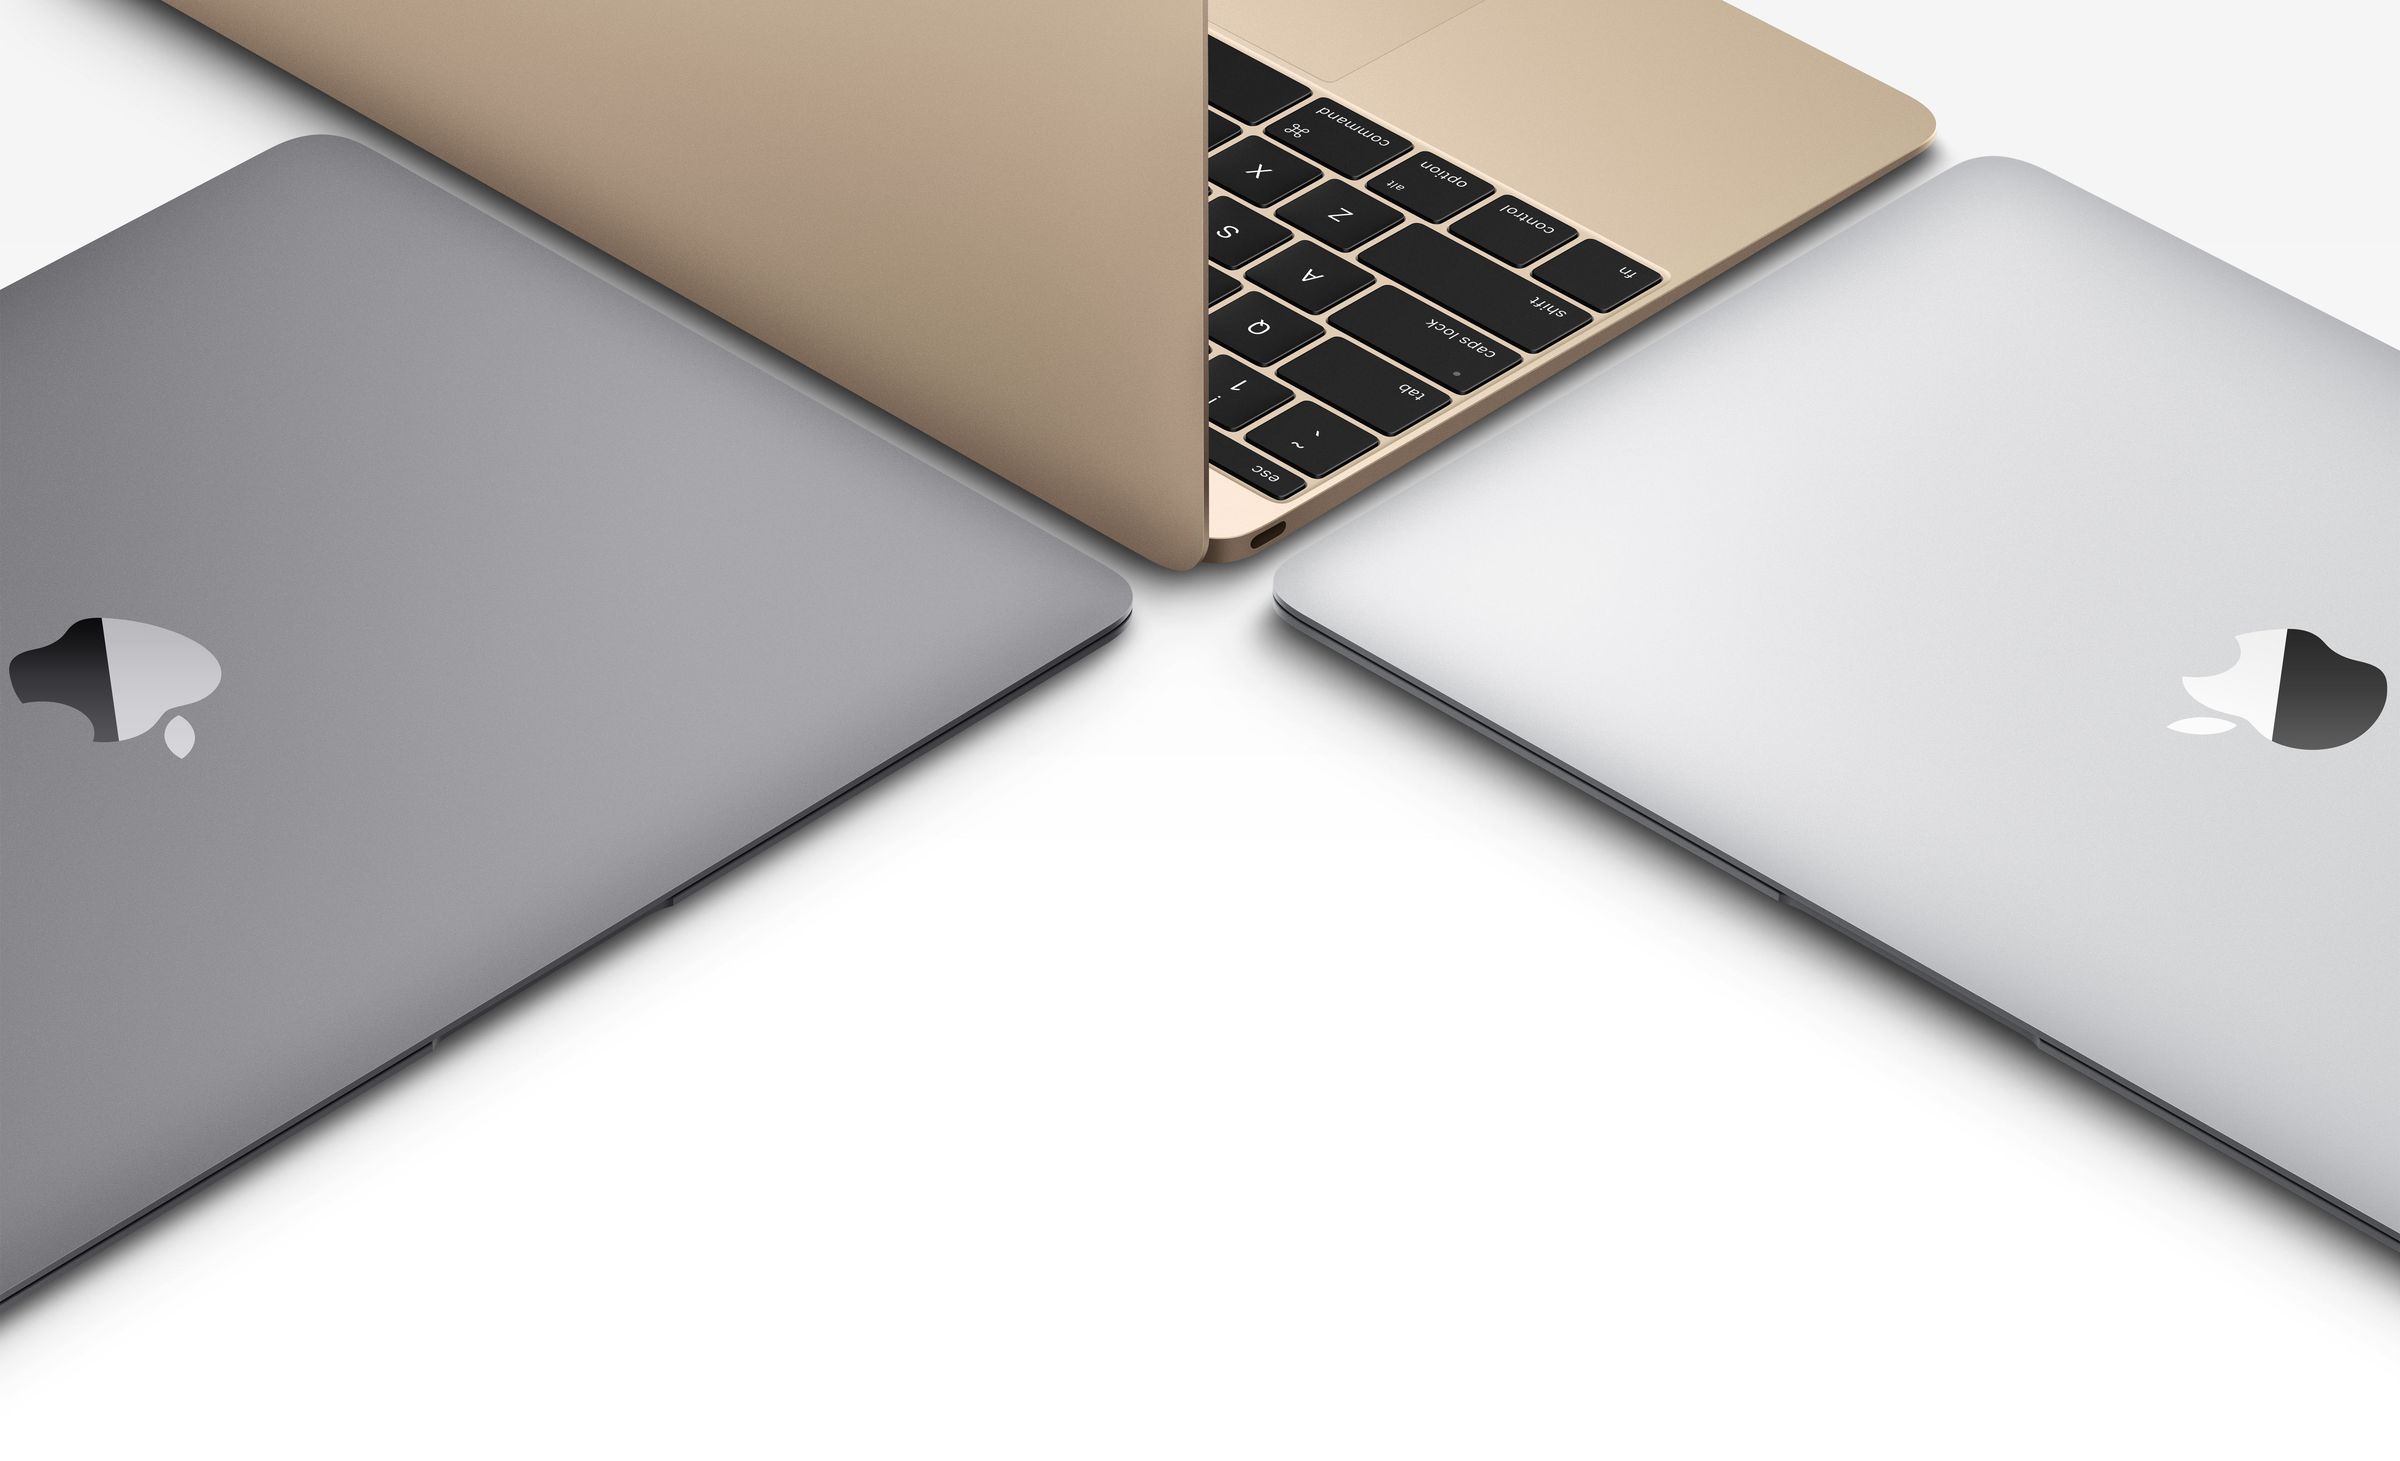 MacBook gold press photos